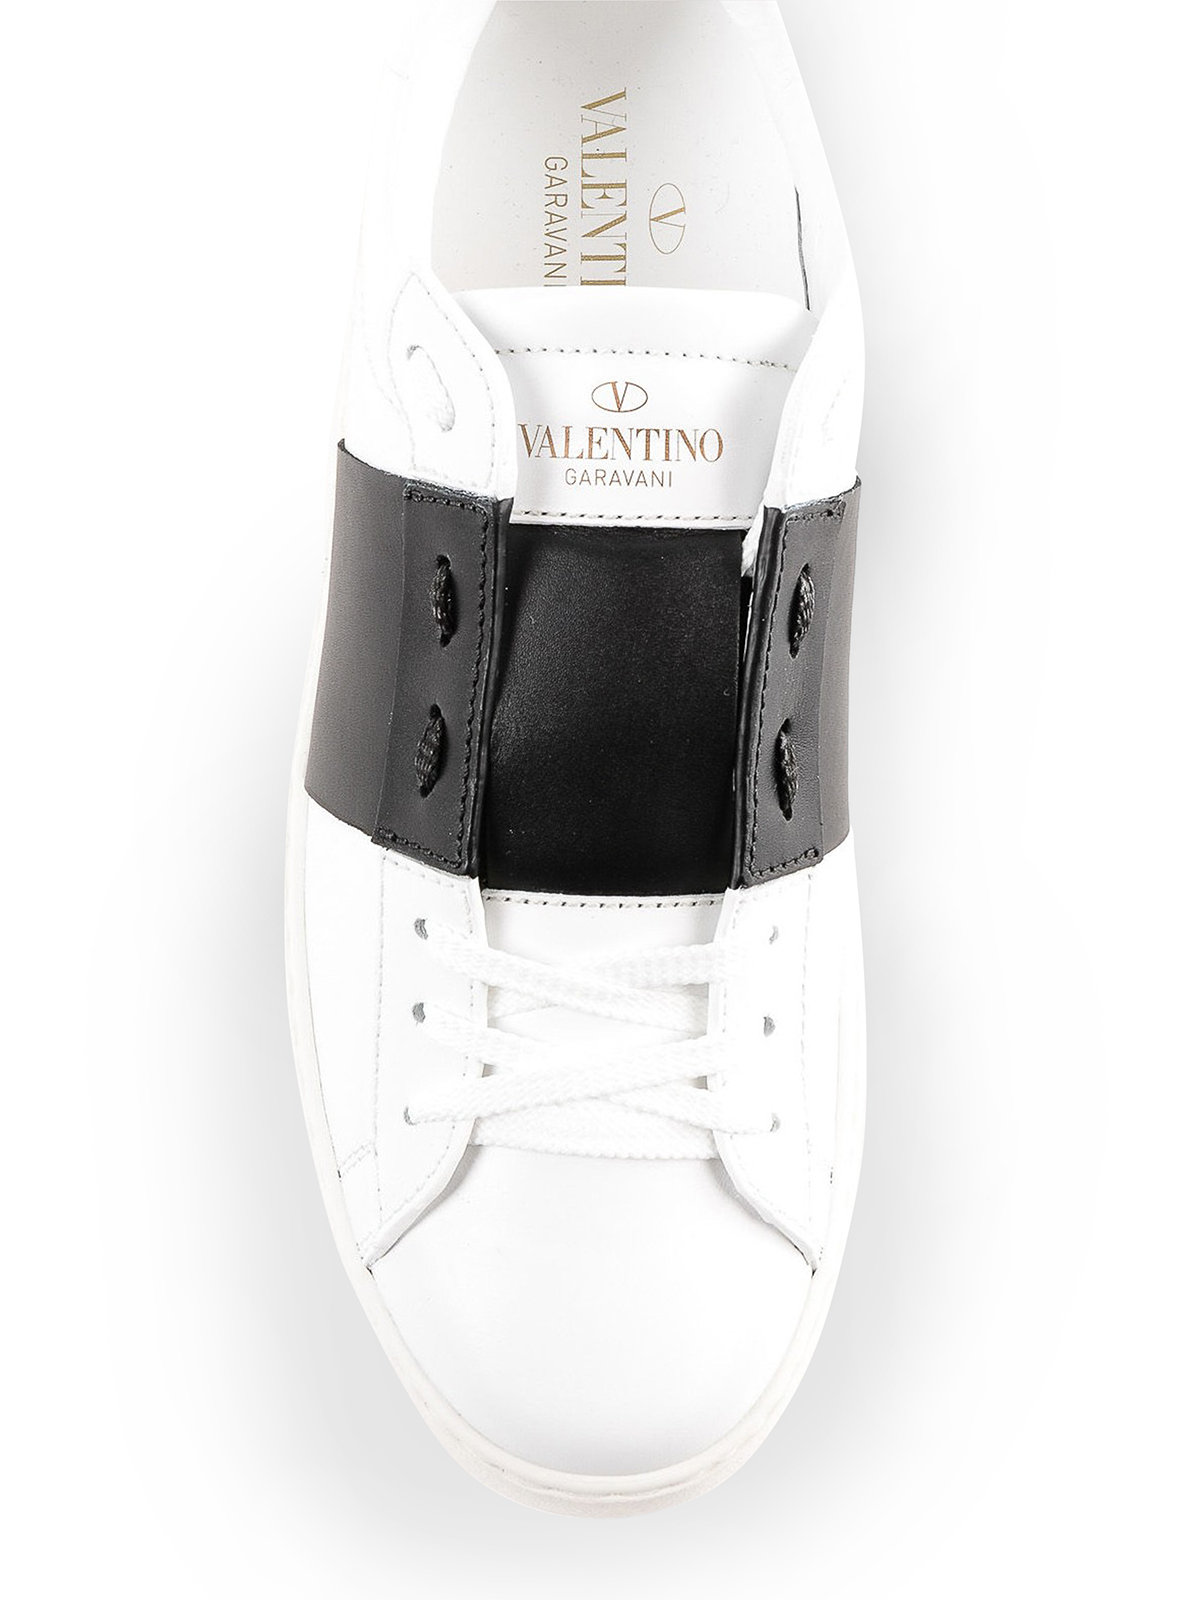 Valentino Garavani - Sneaker Open bianche con banda nera - sneakers -  PW0S0781BLUA01